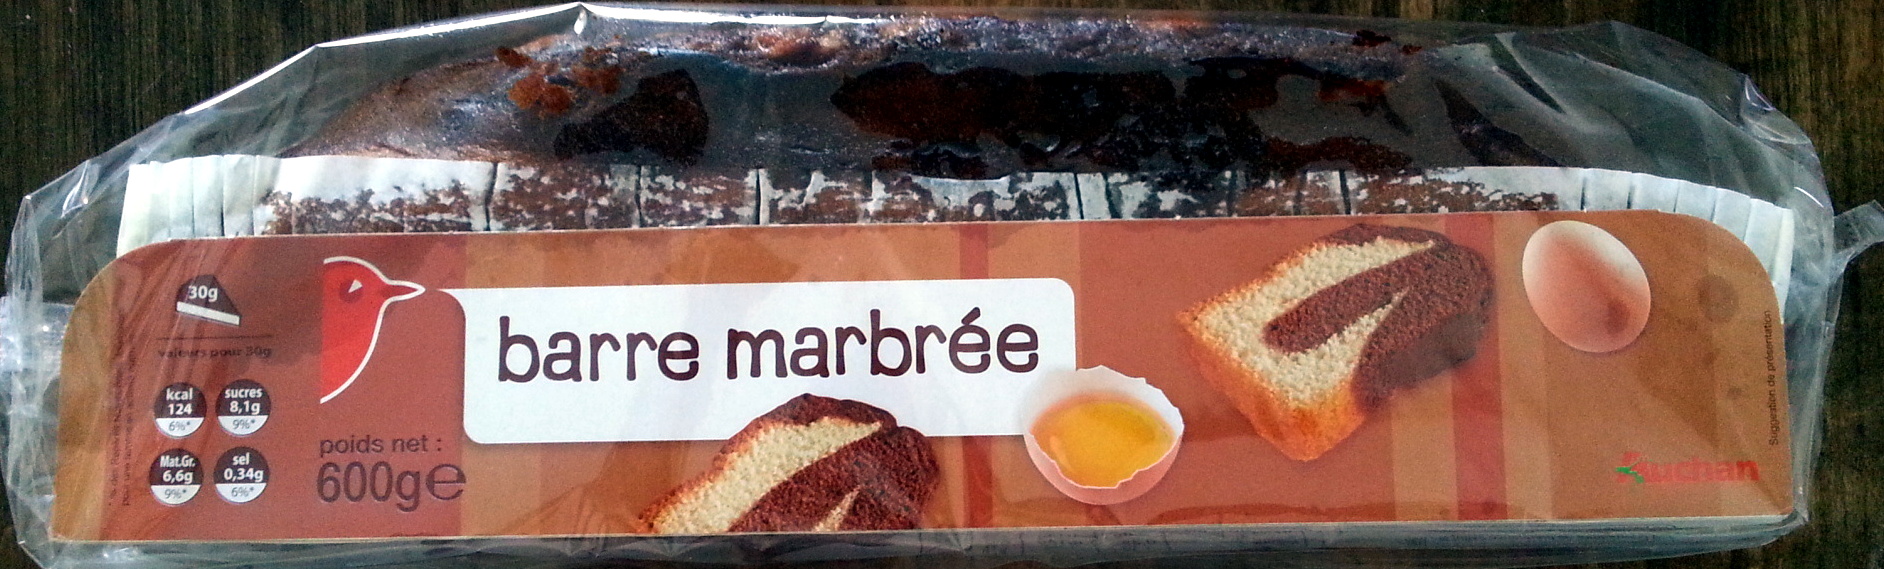 Barre marbrée - نتاج - fr